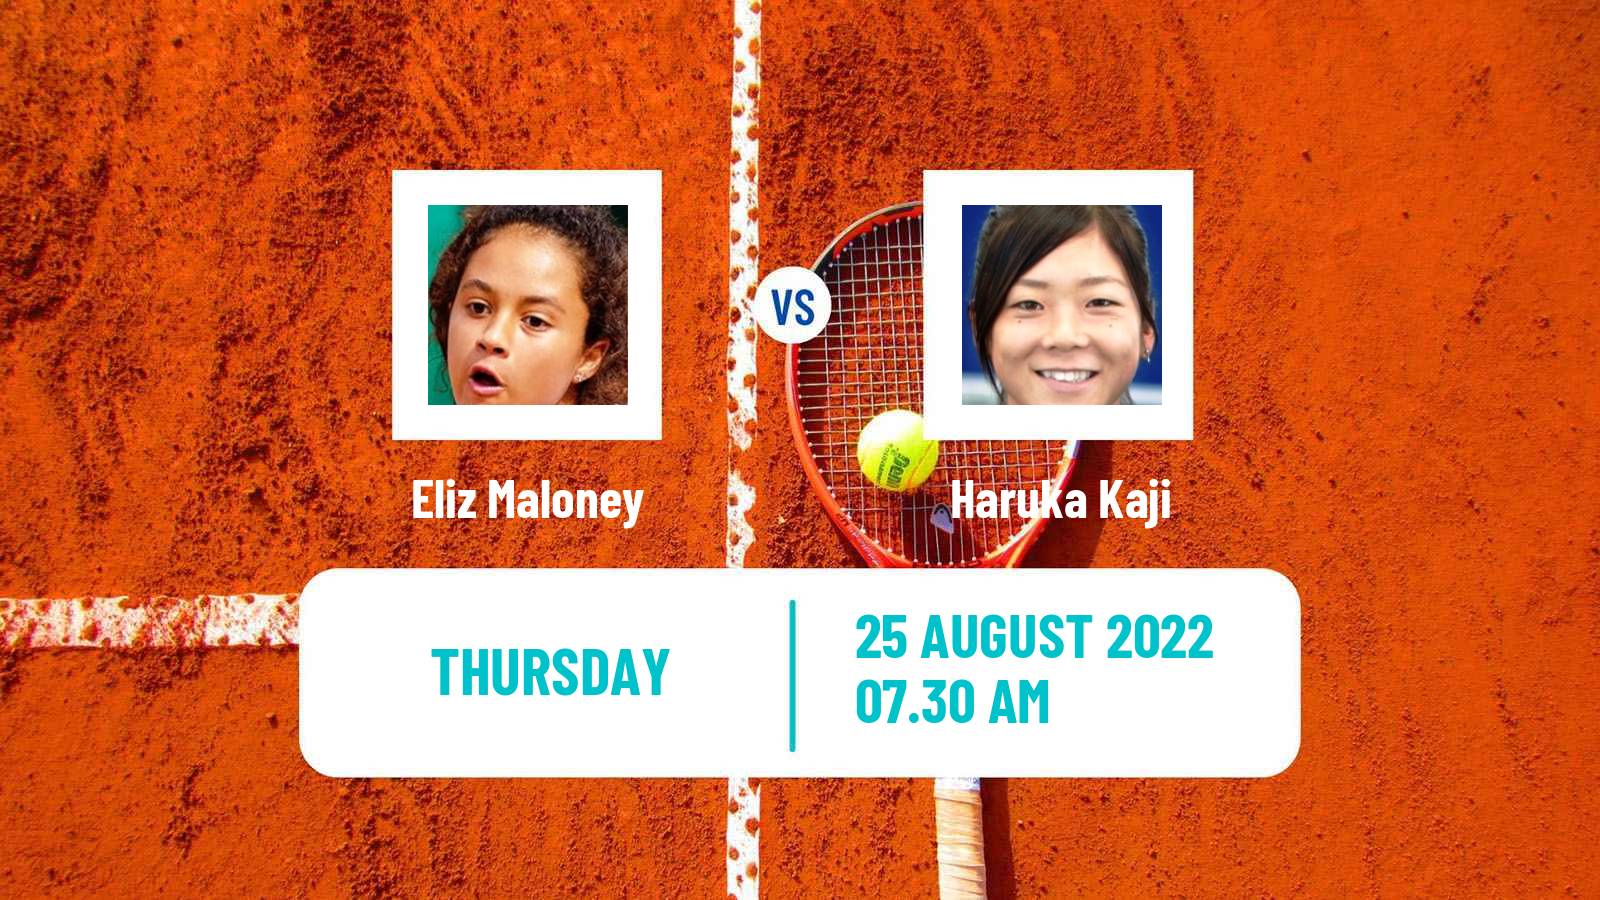 Tennis ITF Tournaments Eliz Maloney - Haruka Kaji